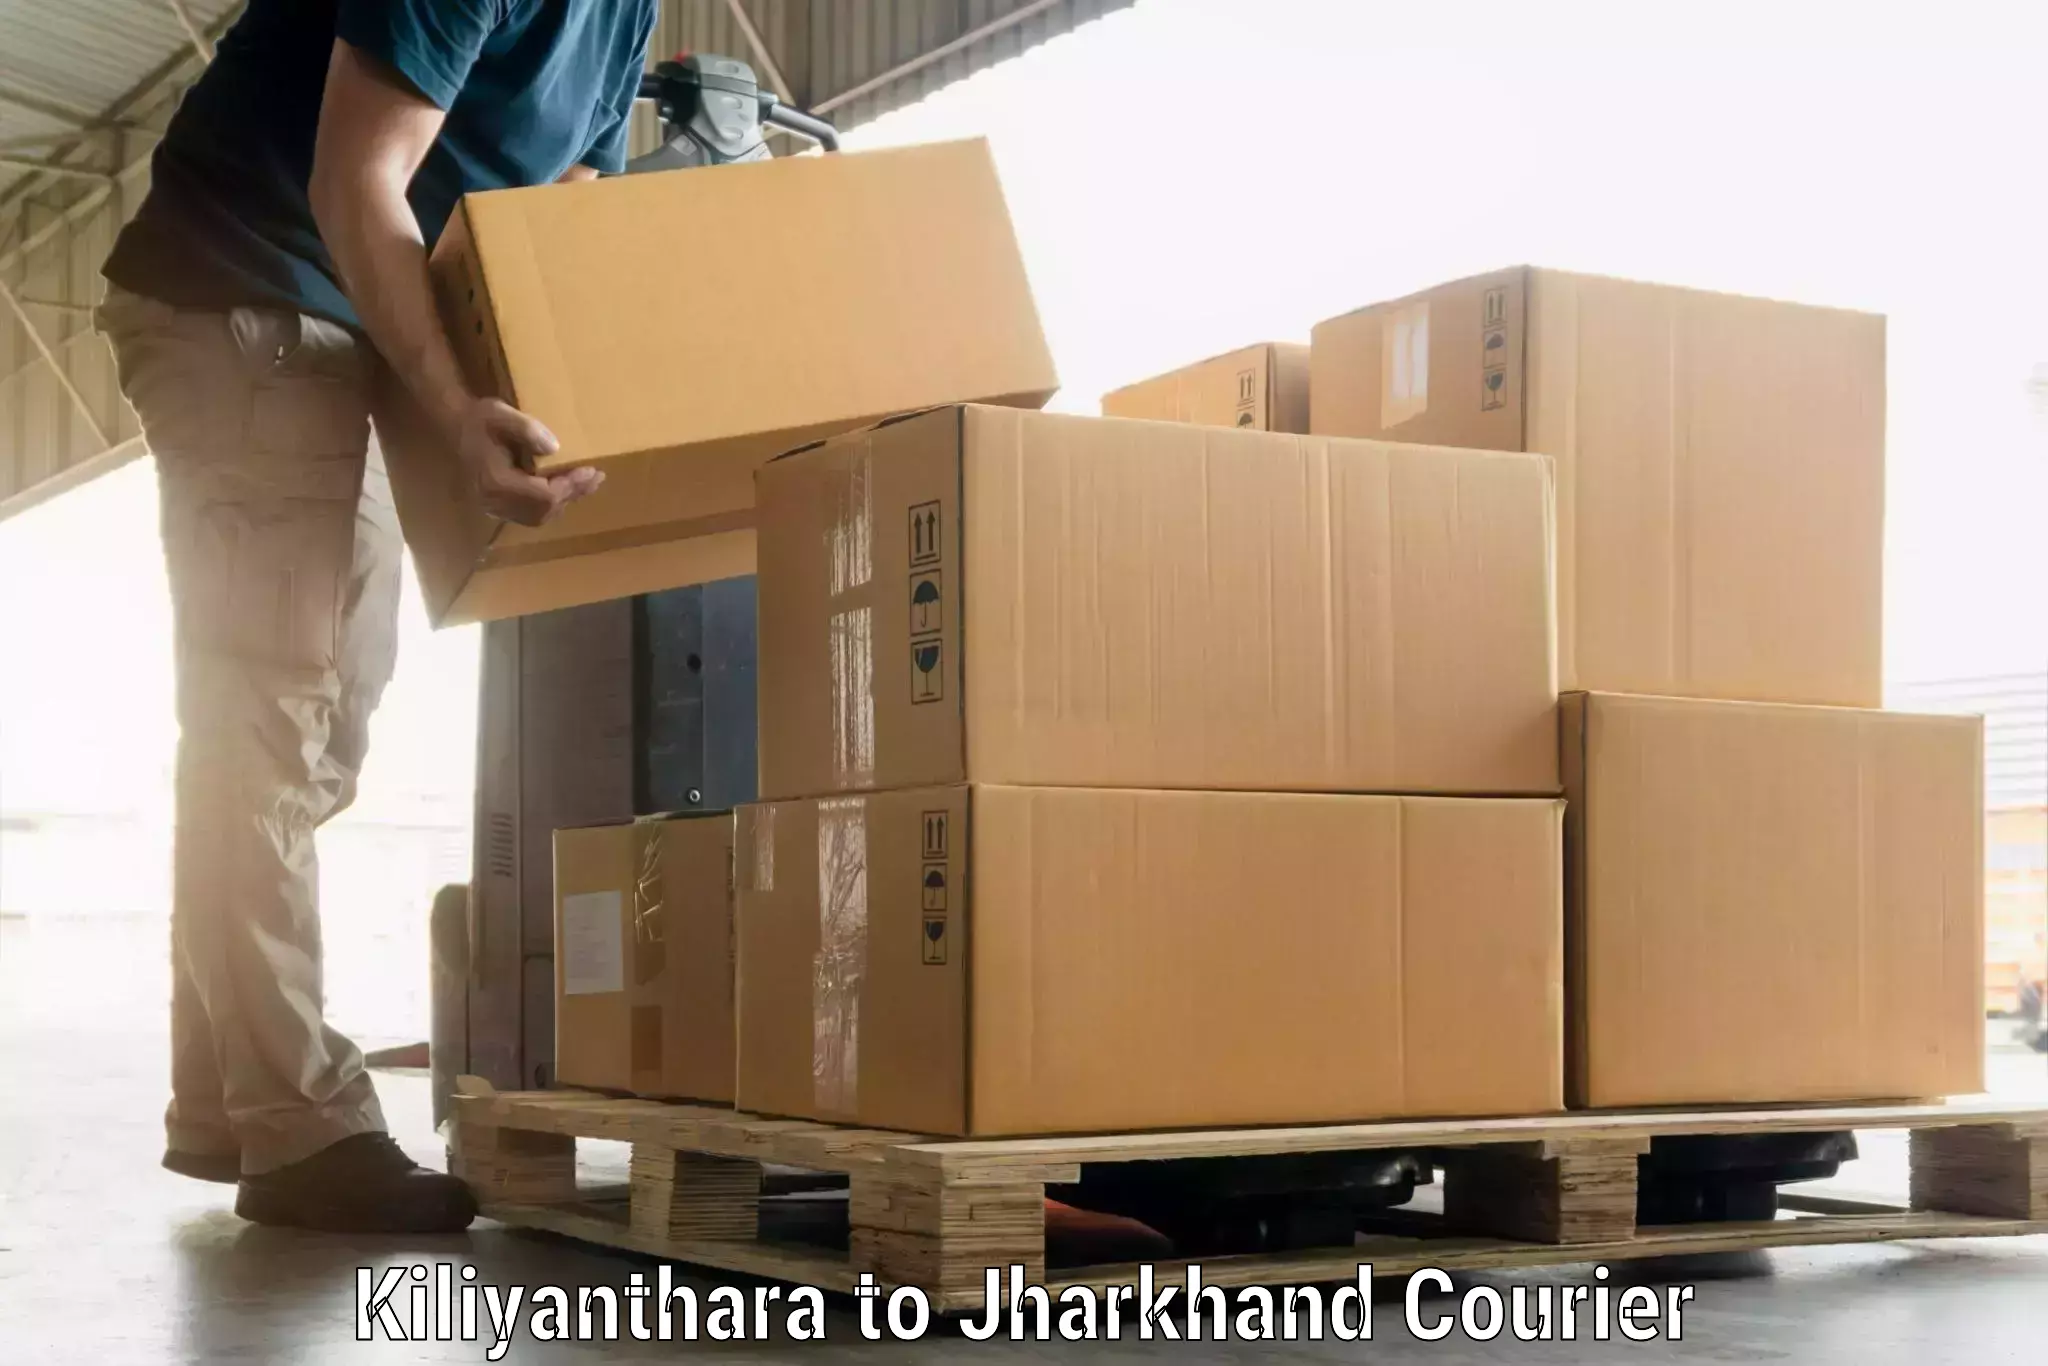 Luggage dispatch service Kiliyanthara to Jamshedpur